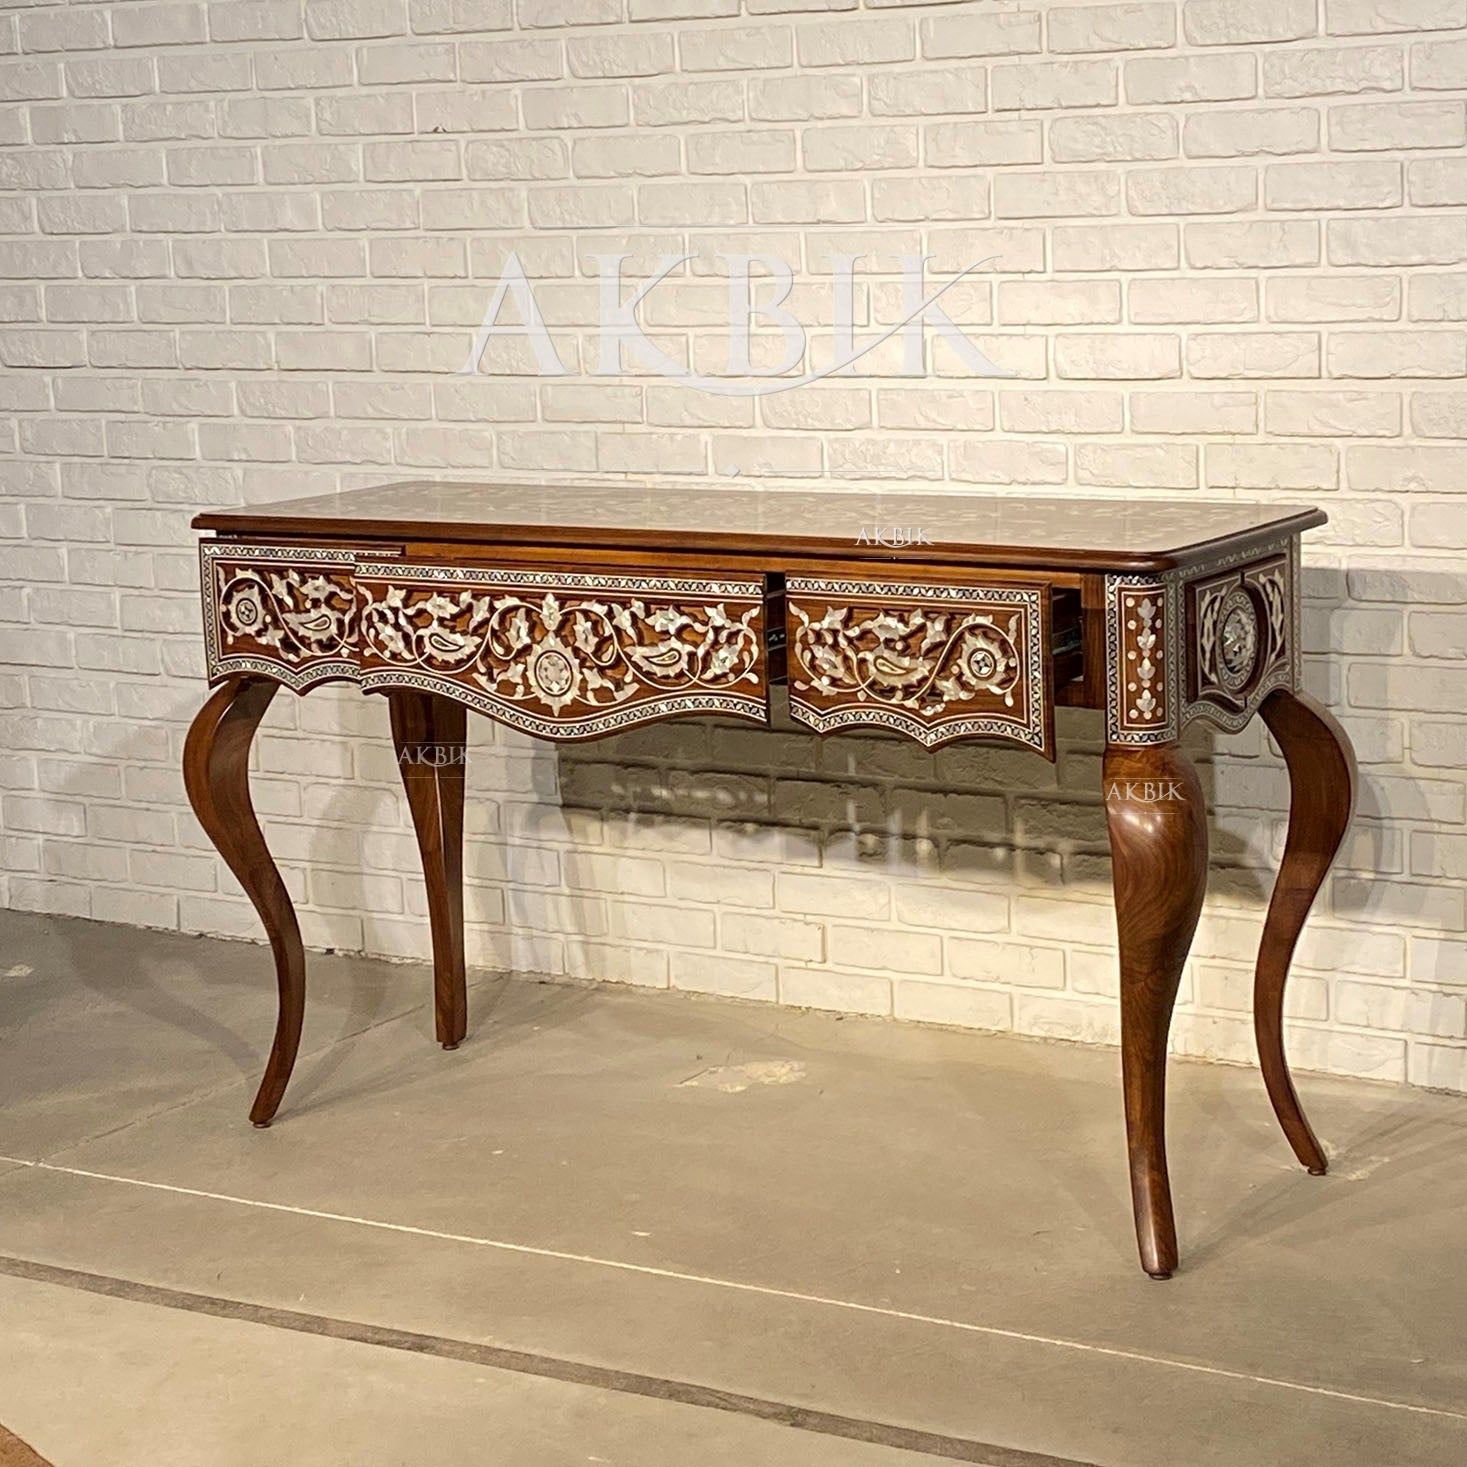 HASNA CONSOLE - AKBIK Furniture & Design